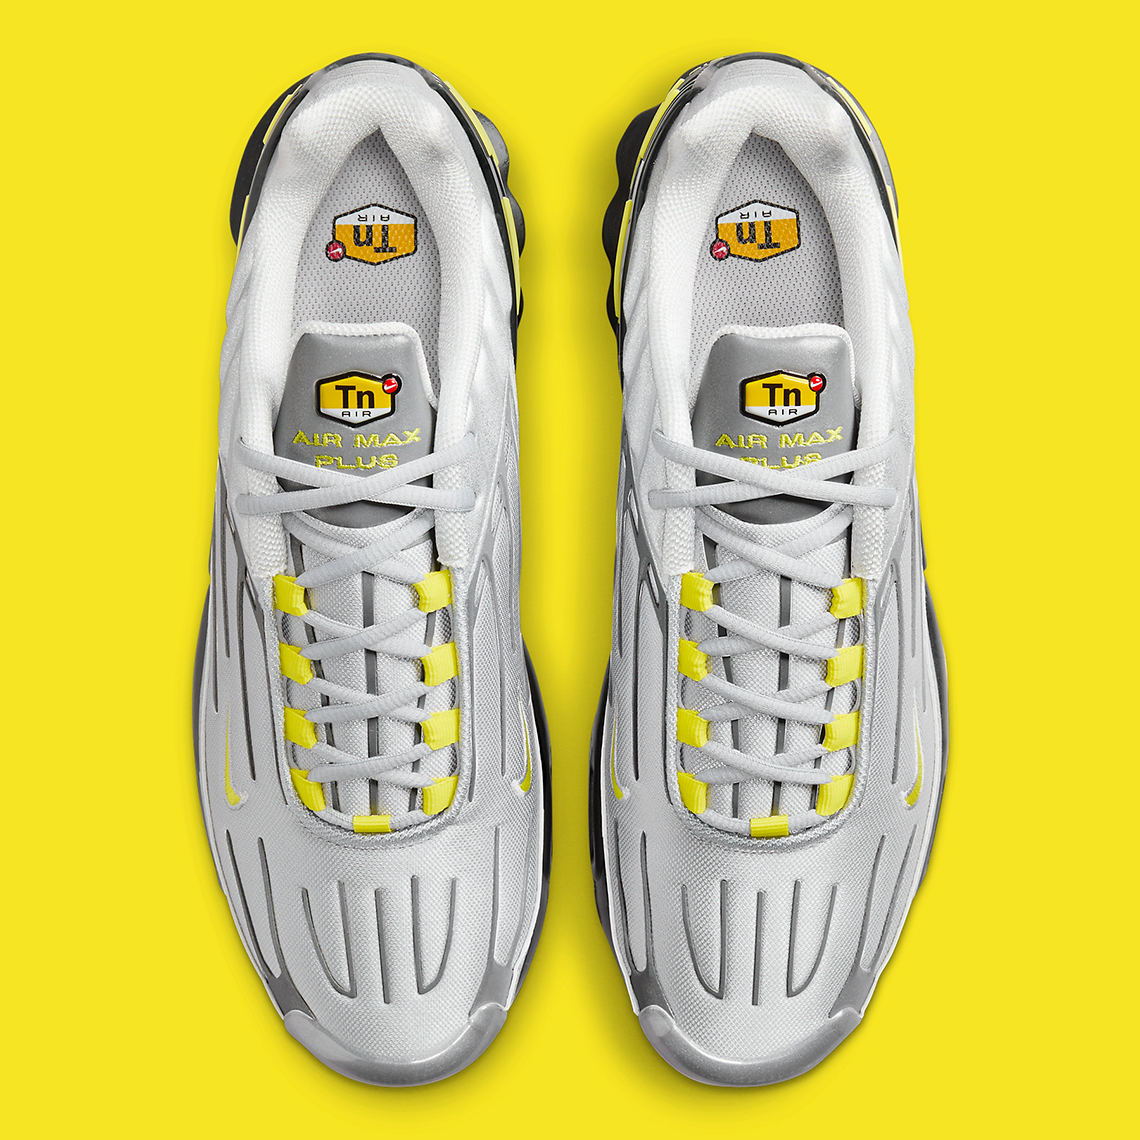 Nike nike grey shoes women Grey Yellow Black Fz4623 001 2